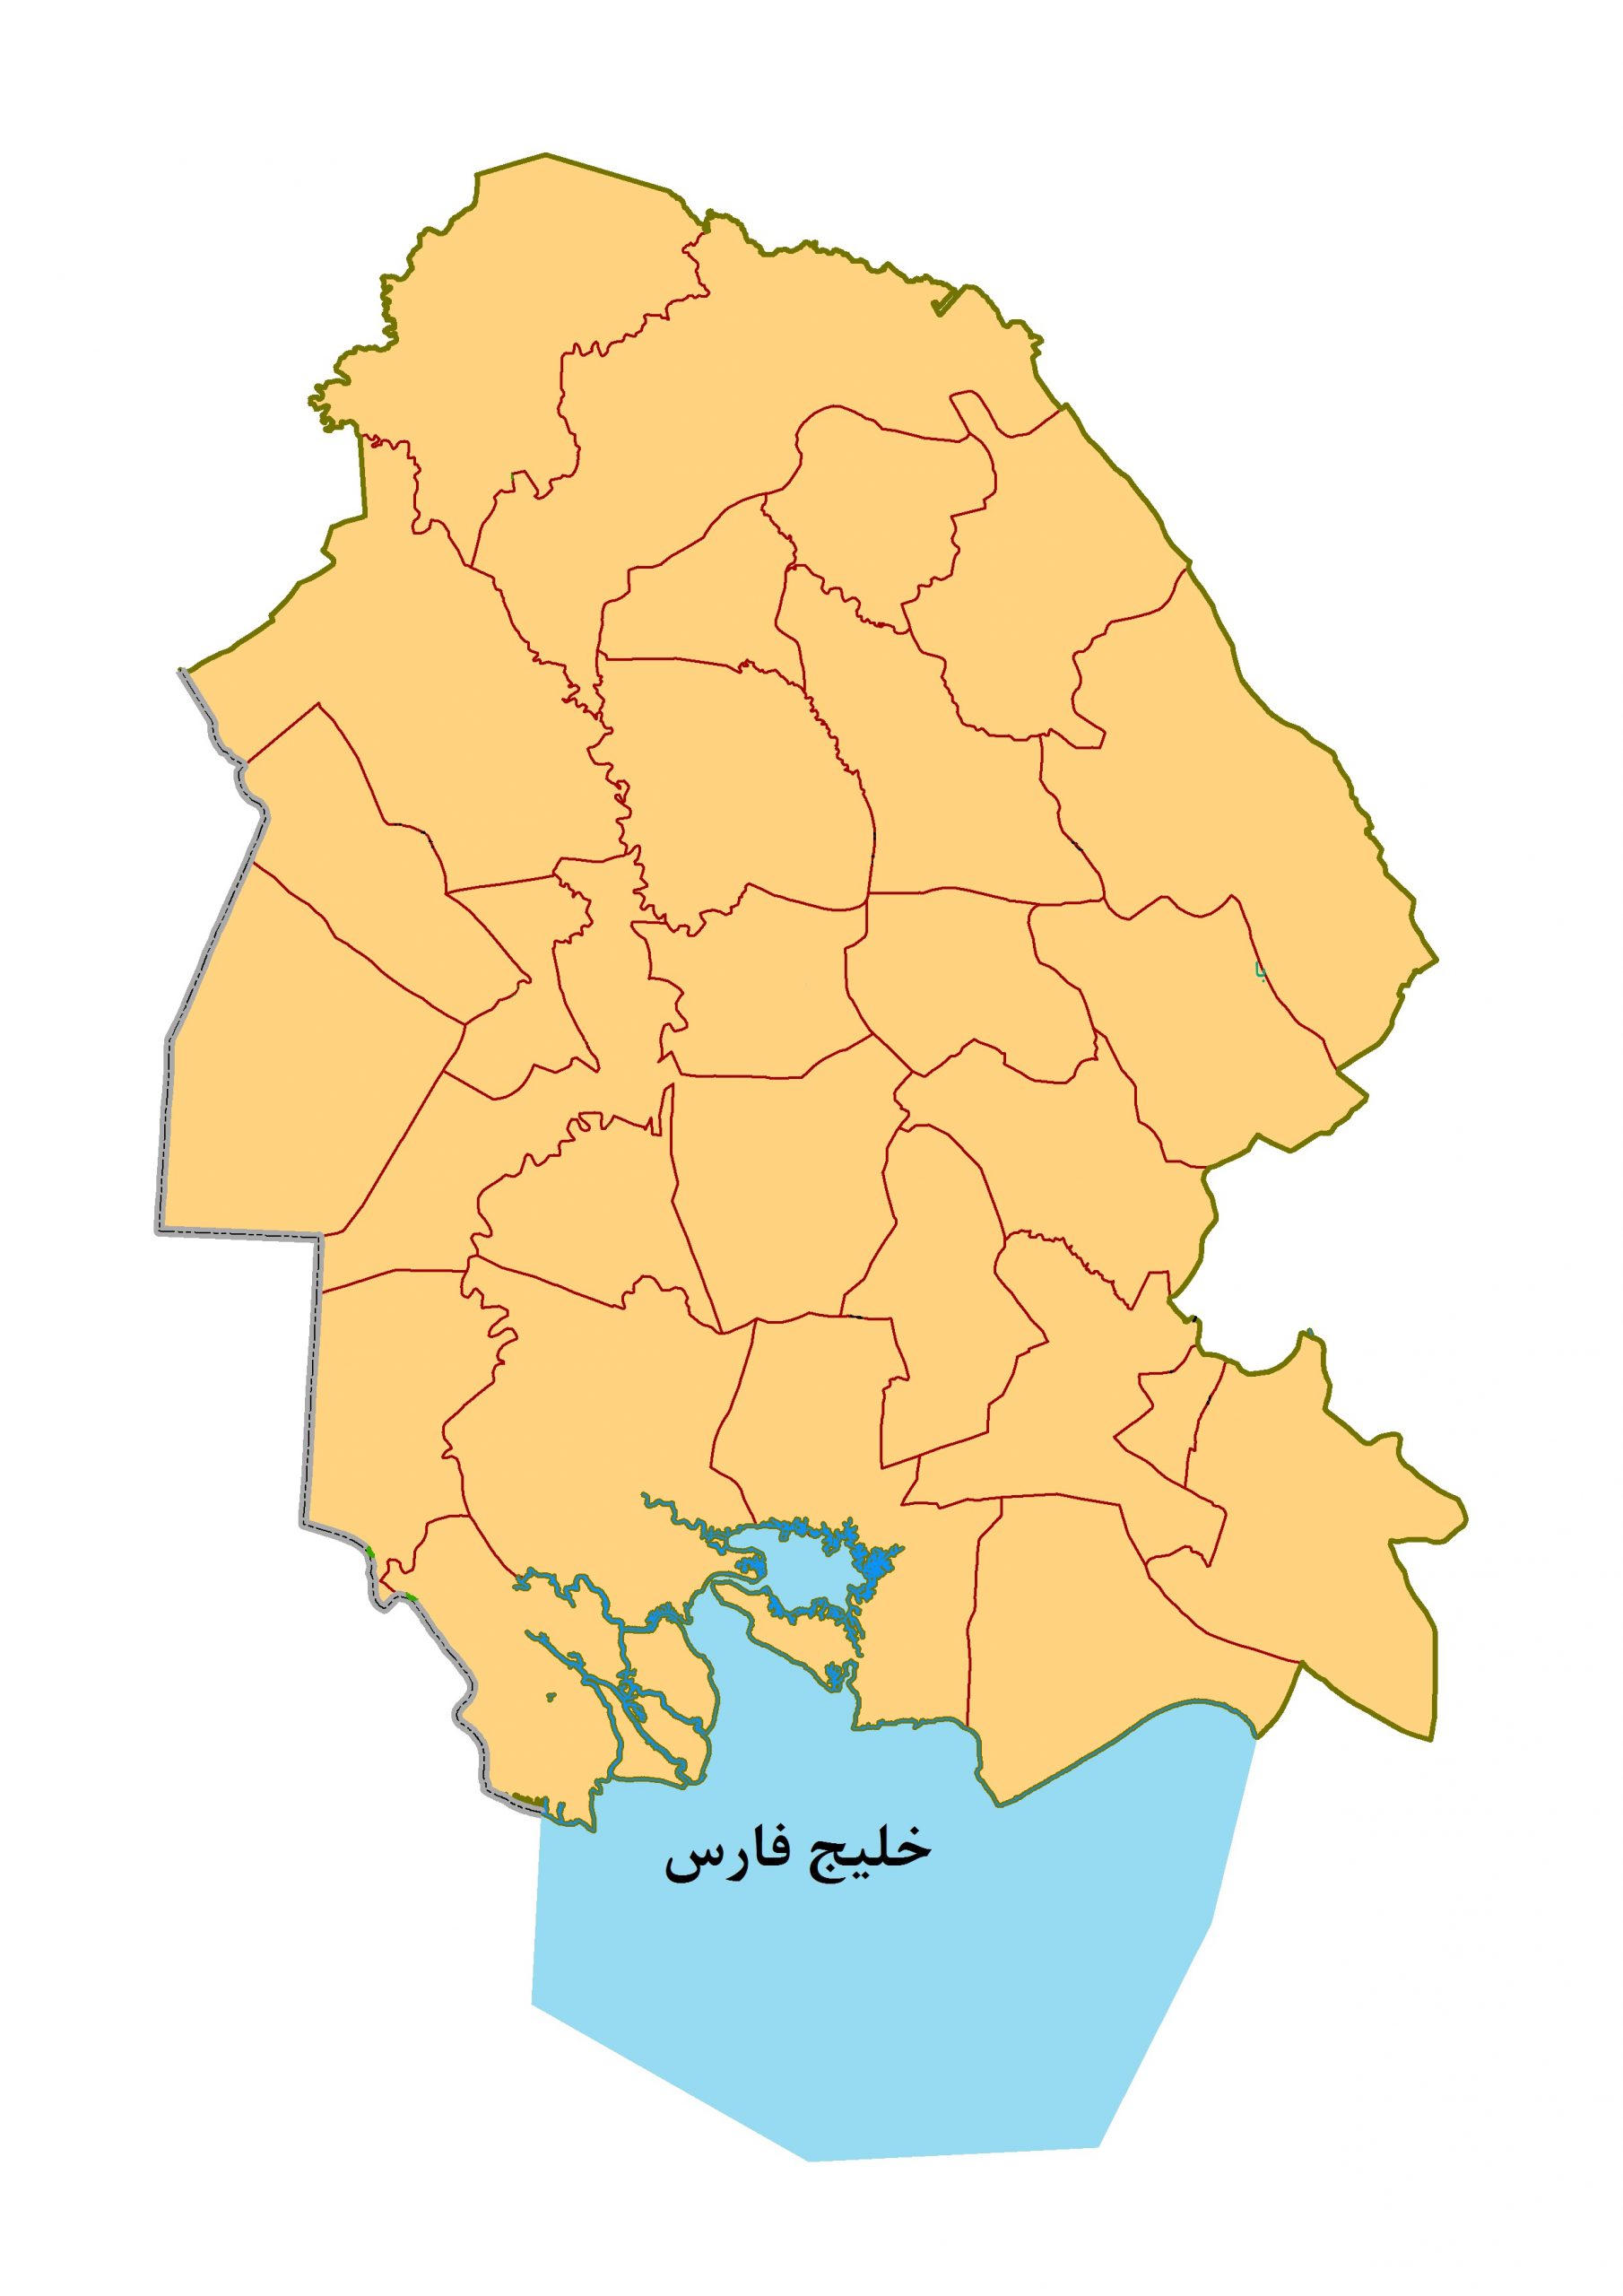 Khuzestan